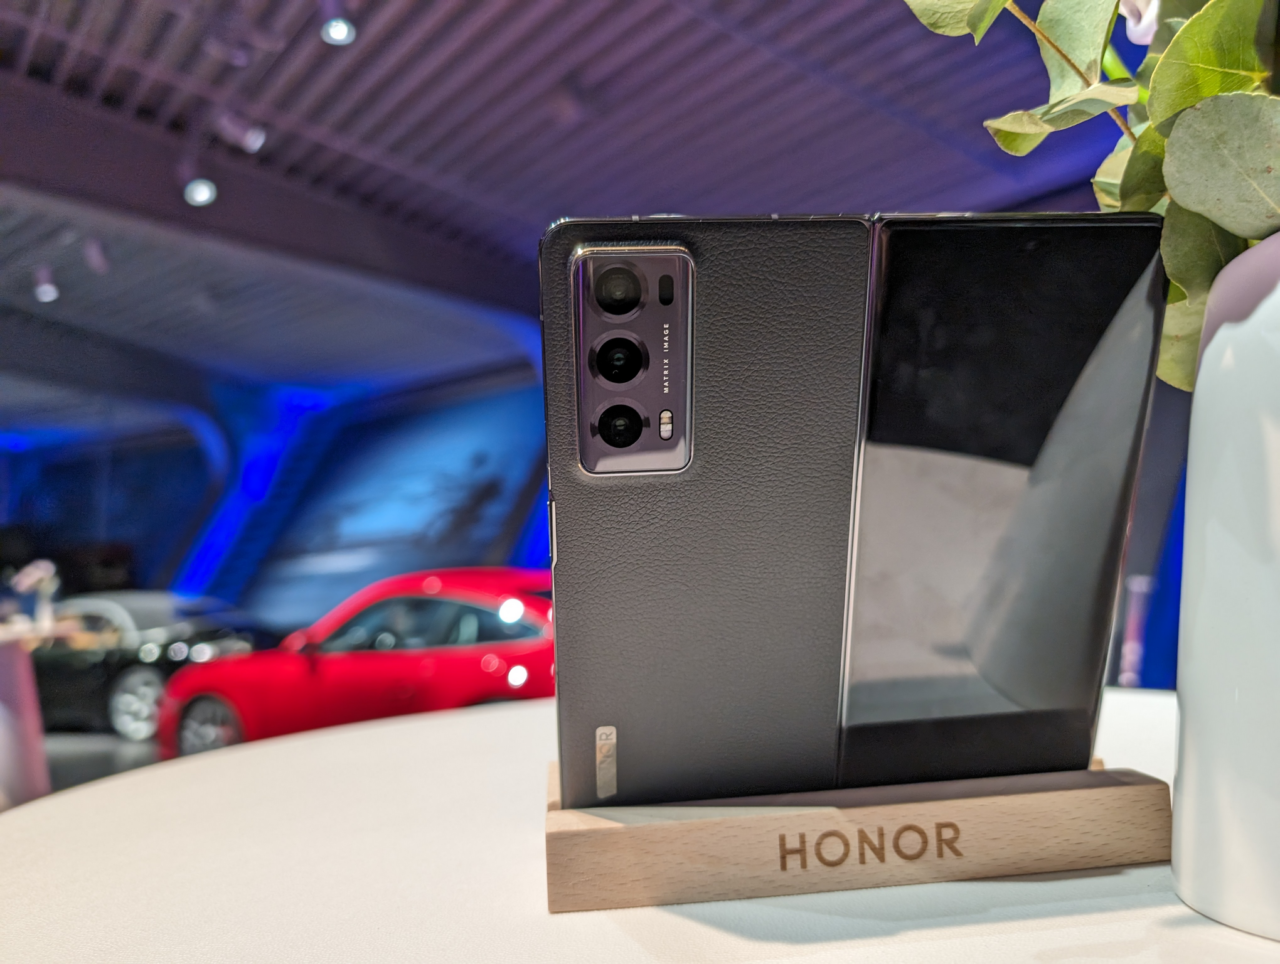 Smartfon marki Honor umieszczony na podstawce, przedzielony na półekranowy wyświetlacz z widocznym odbiciem, na tle rośliny i rozmazanego czerwonego samochodu.